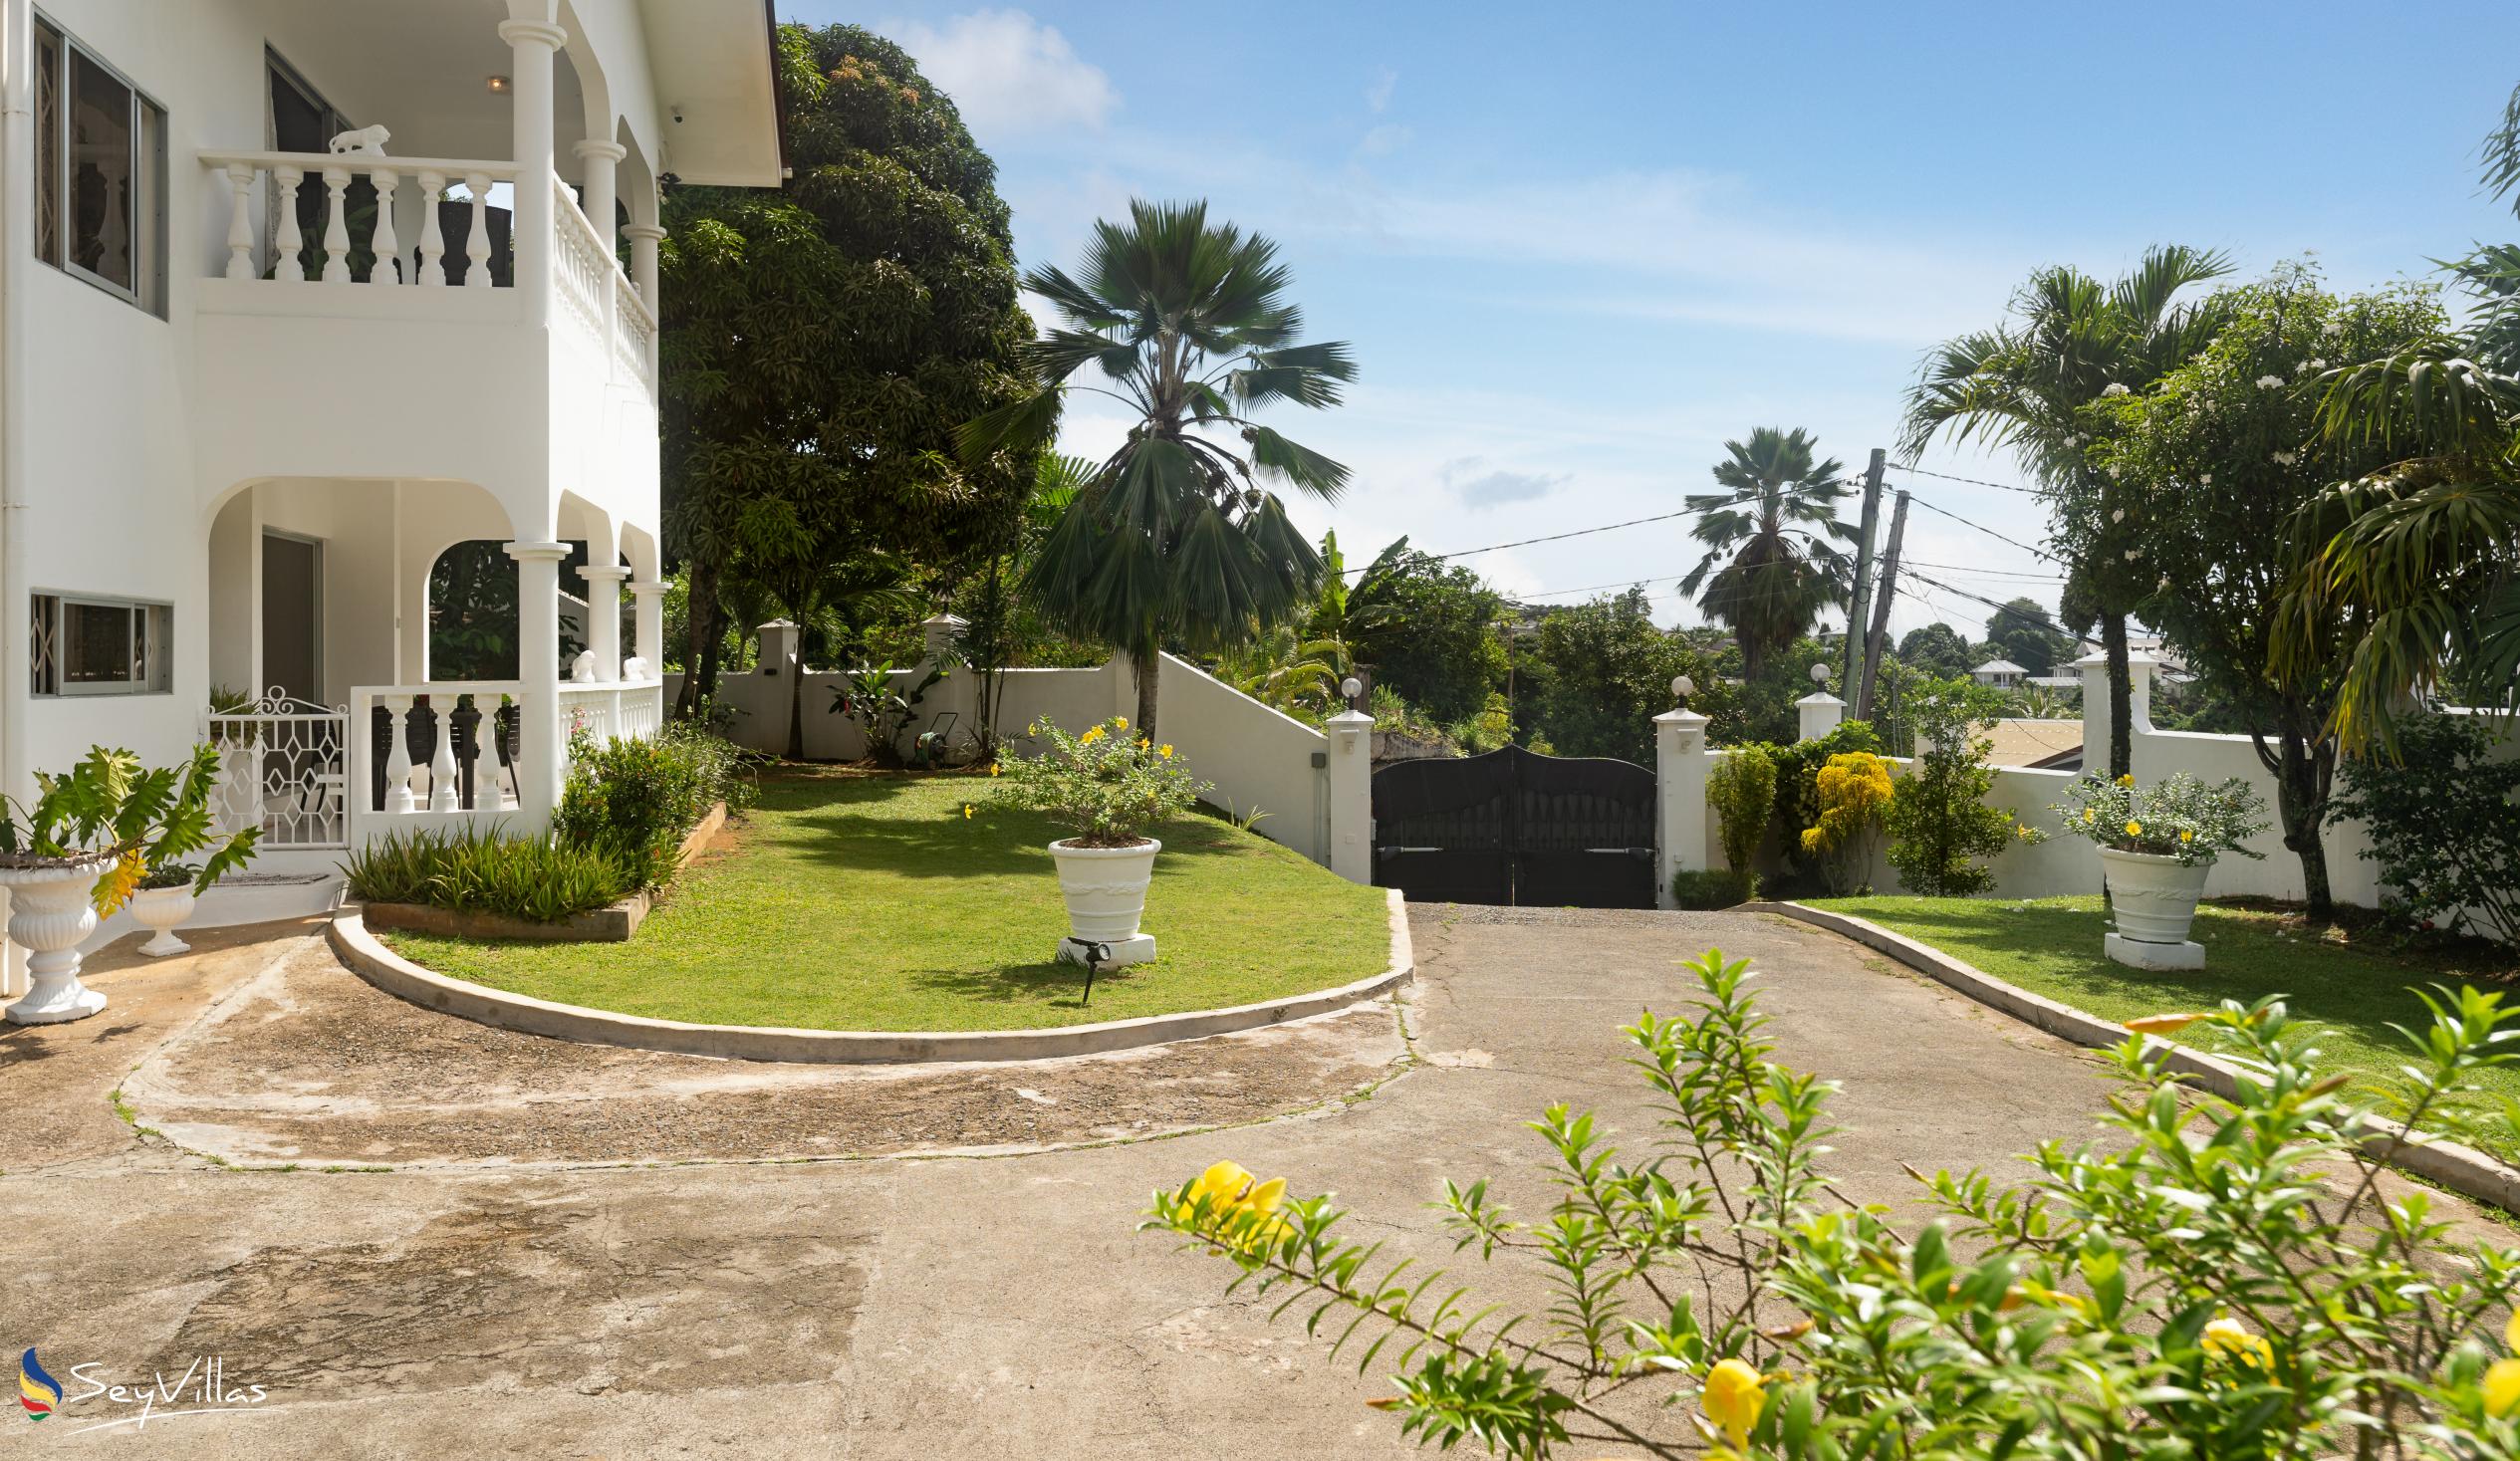 Foto 9: Villa Verde - Aussenbereich - Mahé (Seychellen)